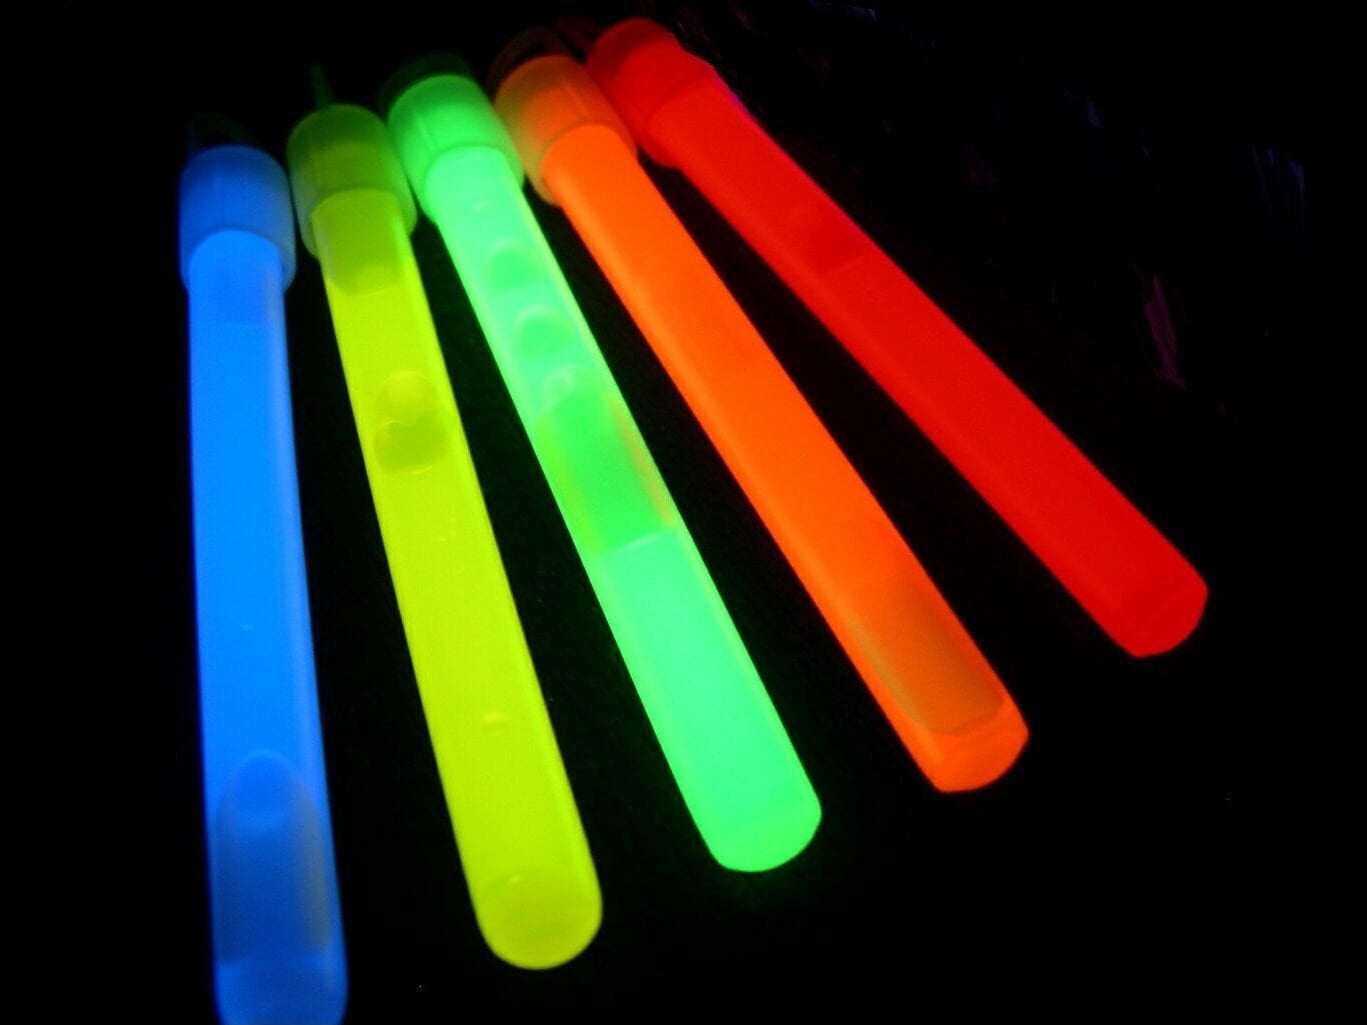 Glow Sticks Bulk Wholesale, 500 4 Glow Stick Light Sticks Assorted + 400  FREE Glow Bracelets BONUS, Glow With Us Brand 